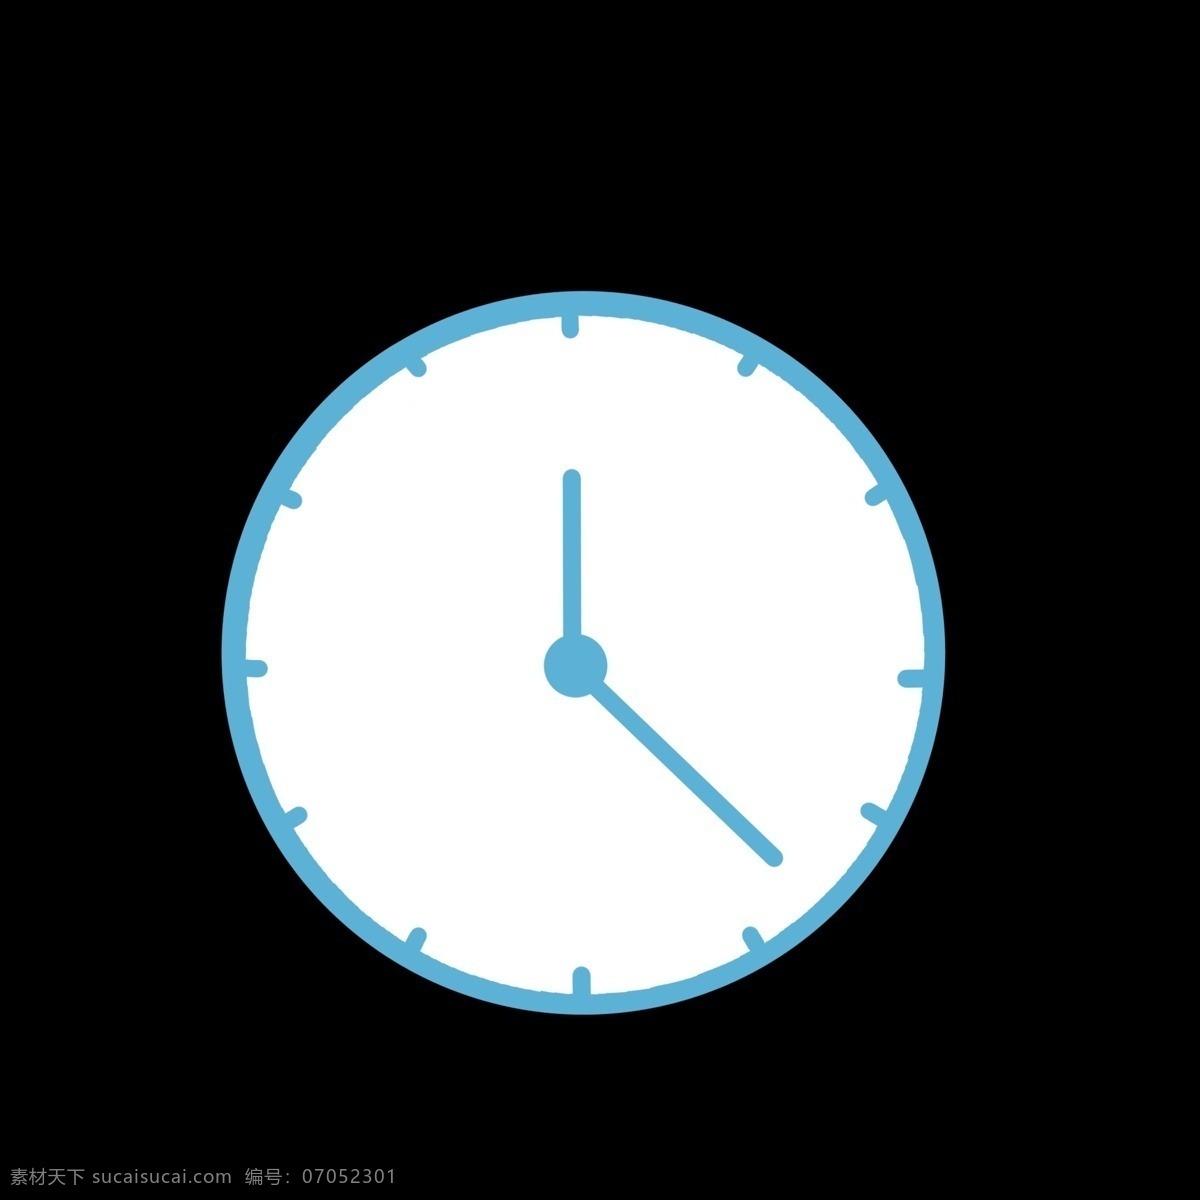 蓝色 时钟 样式 图标 几何图形 彩色 白色 视频图标 卡通 ppt可用 简单 简约 简洁